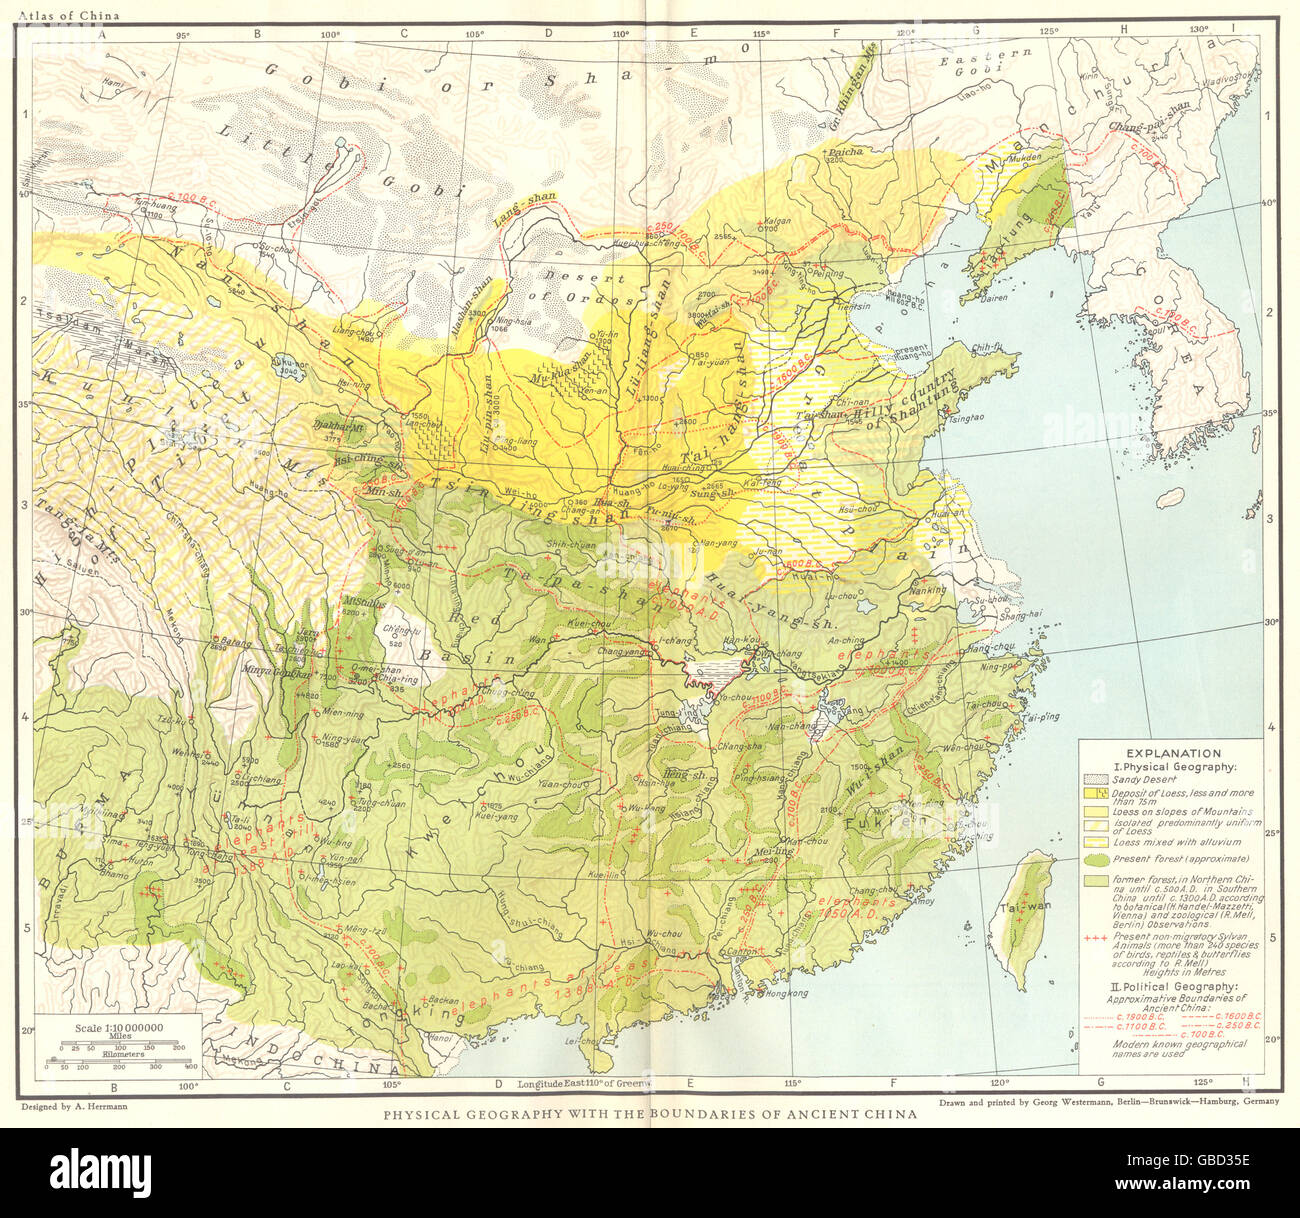 Chine : la géographie physique avec les limites de la Chine ancienne, 1935 Ancien site Banque D'Images